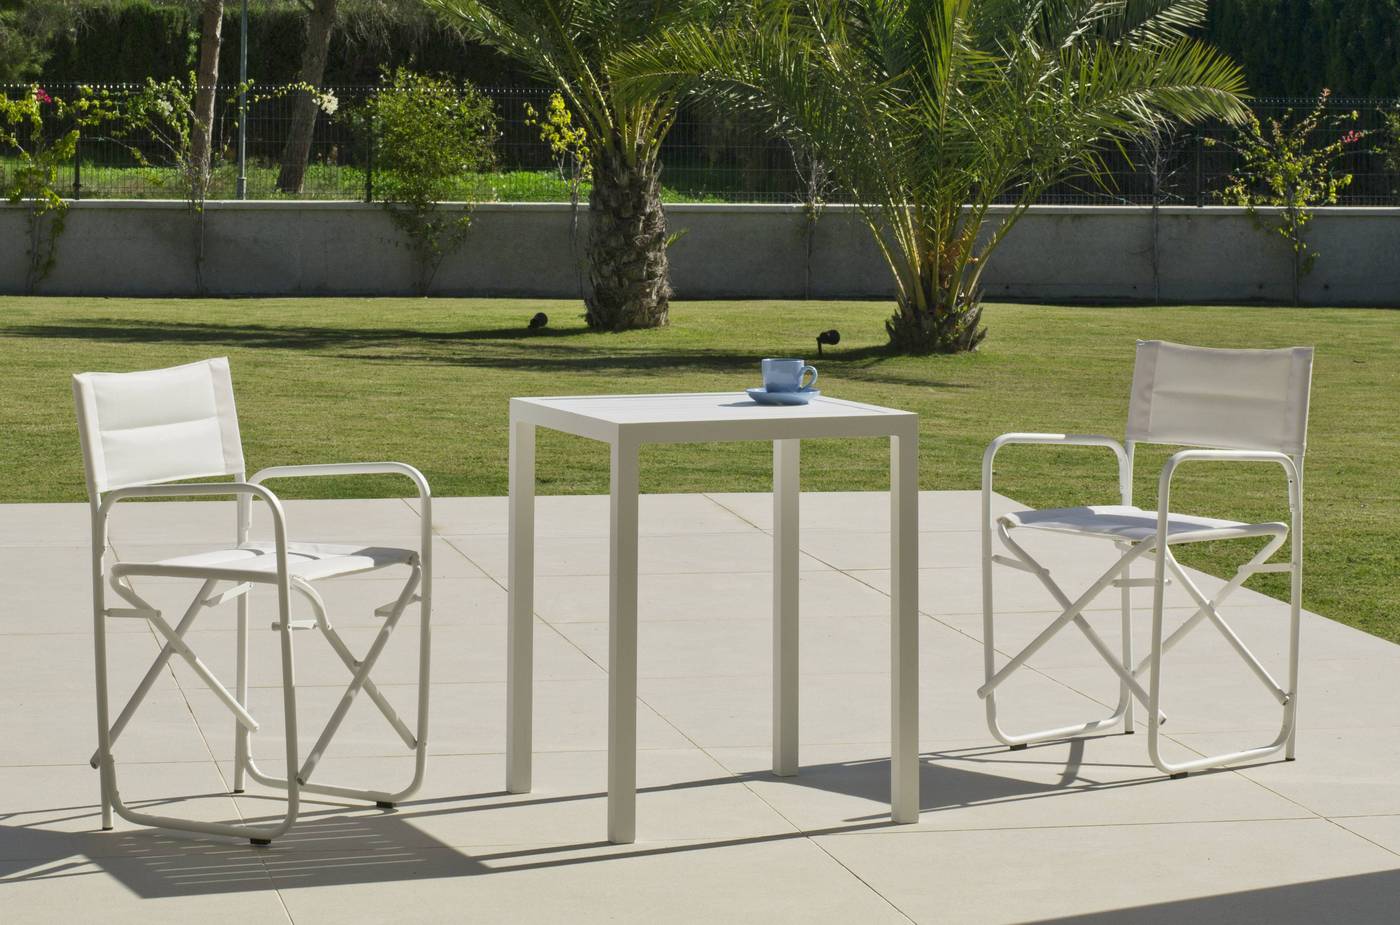 Set Aluminio Melea-Badúa 65-2 - Conjunto aluminio luxe: Mesa cuadrada 65 cm + 2 sillones plegables. Disponible en color blanco o antracita.